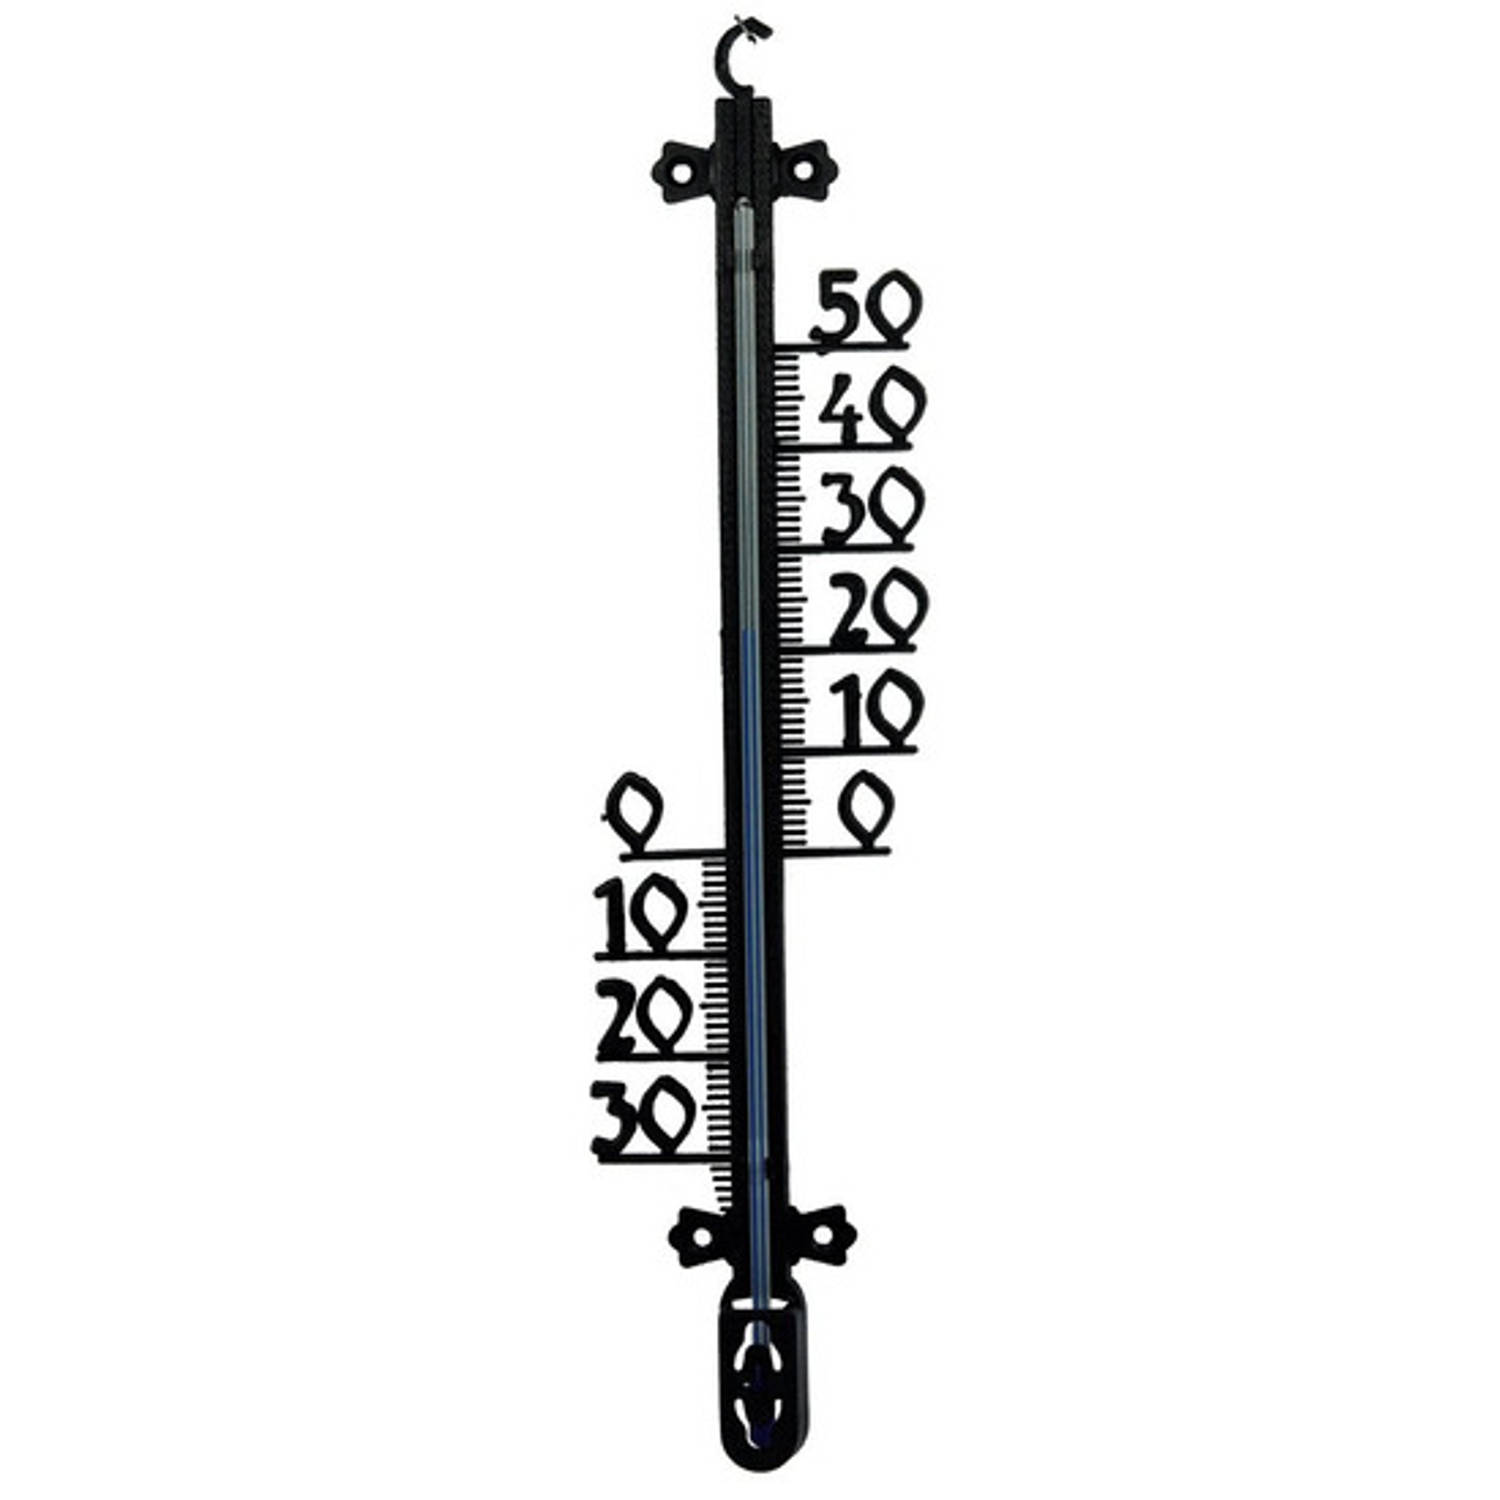 Broek Trek Steil Buitenthermometer voor tuin / buiten 65 x 9 x 2 cm - zwart -  buitenthermometers / temperatuurmeters | Blokker